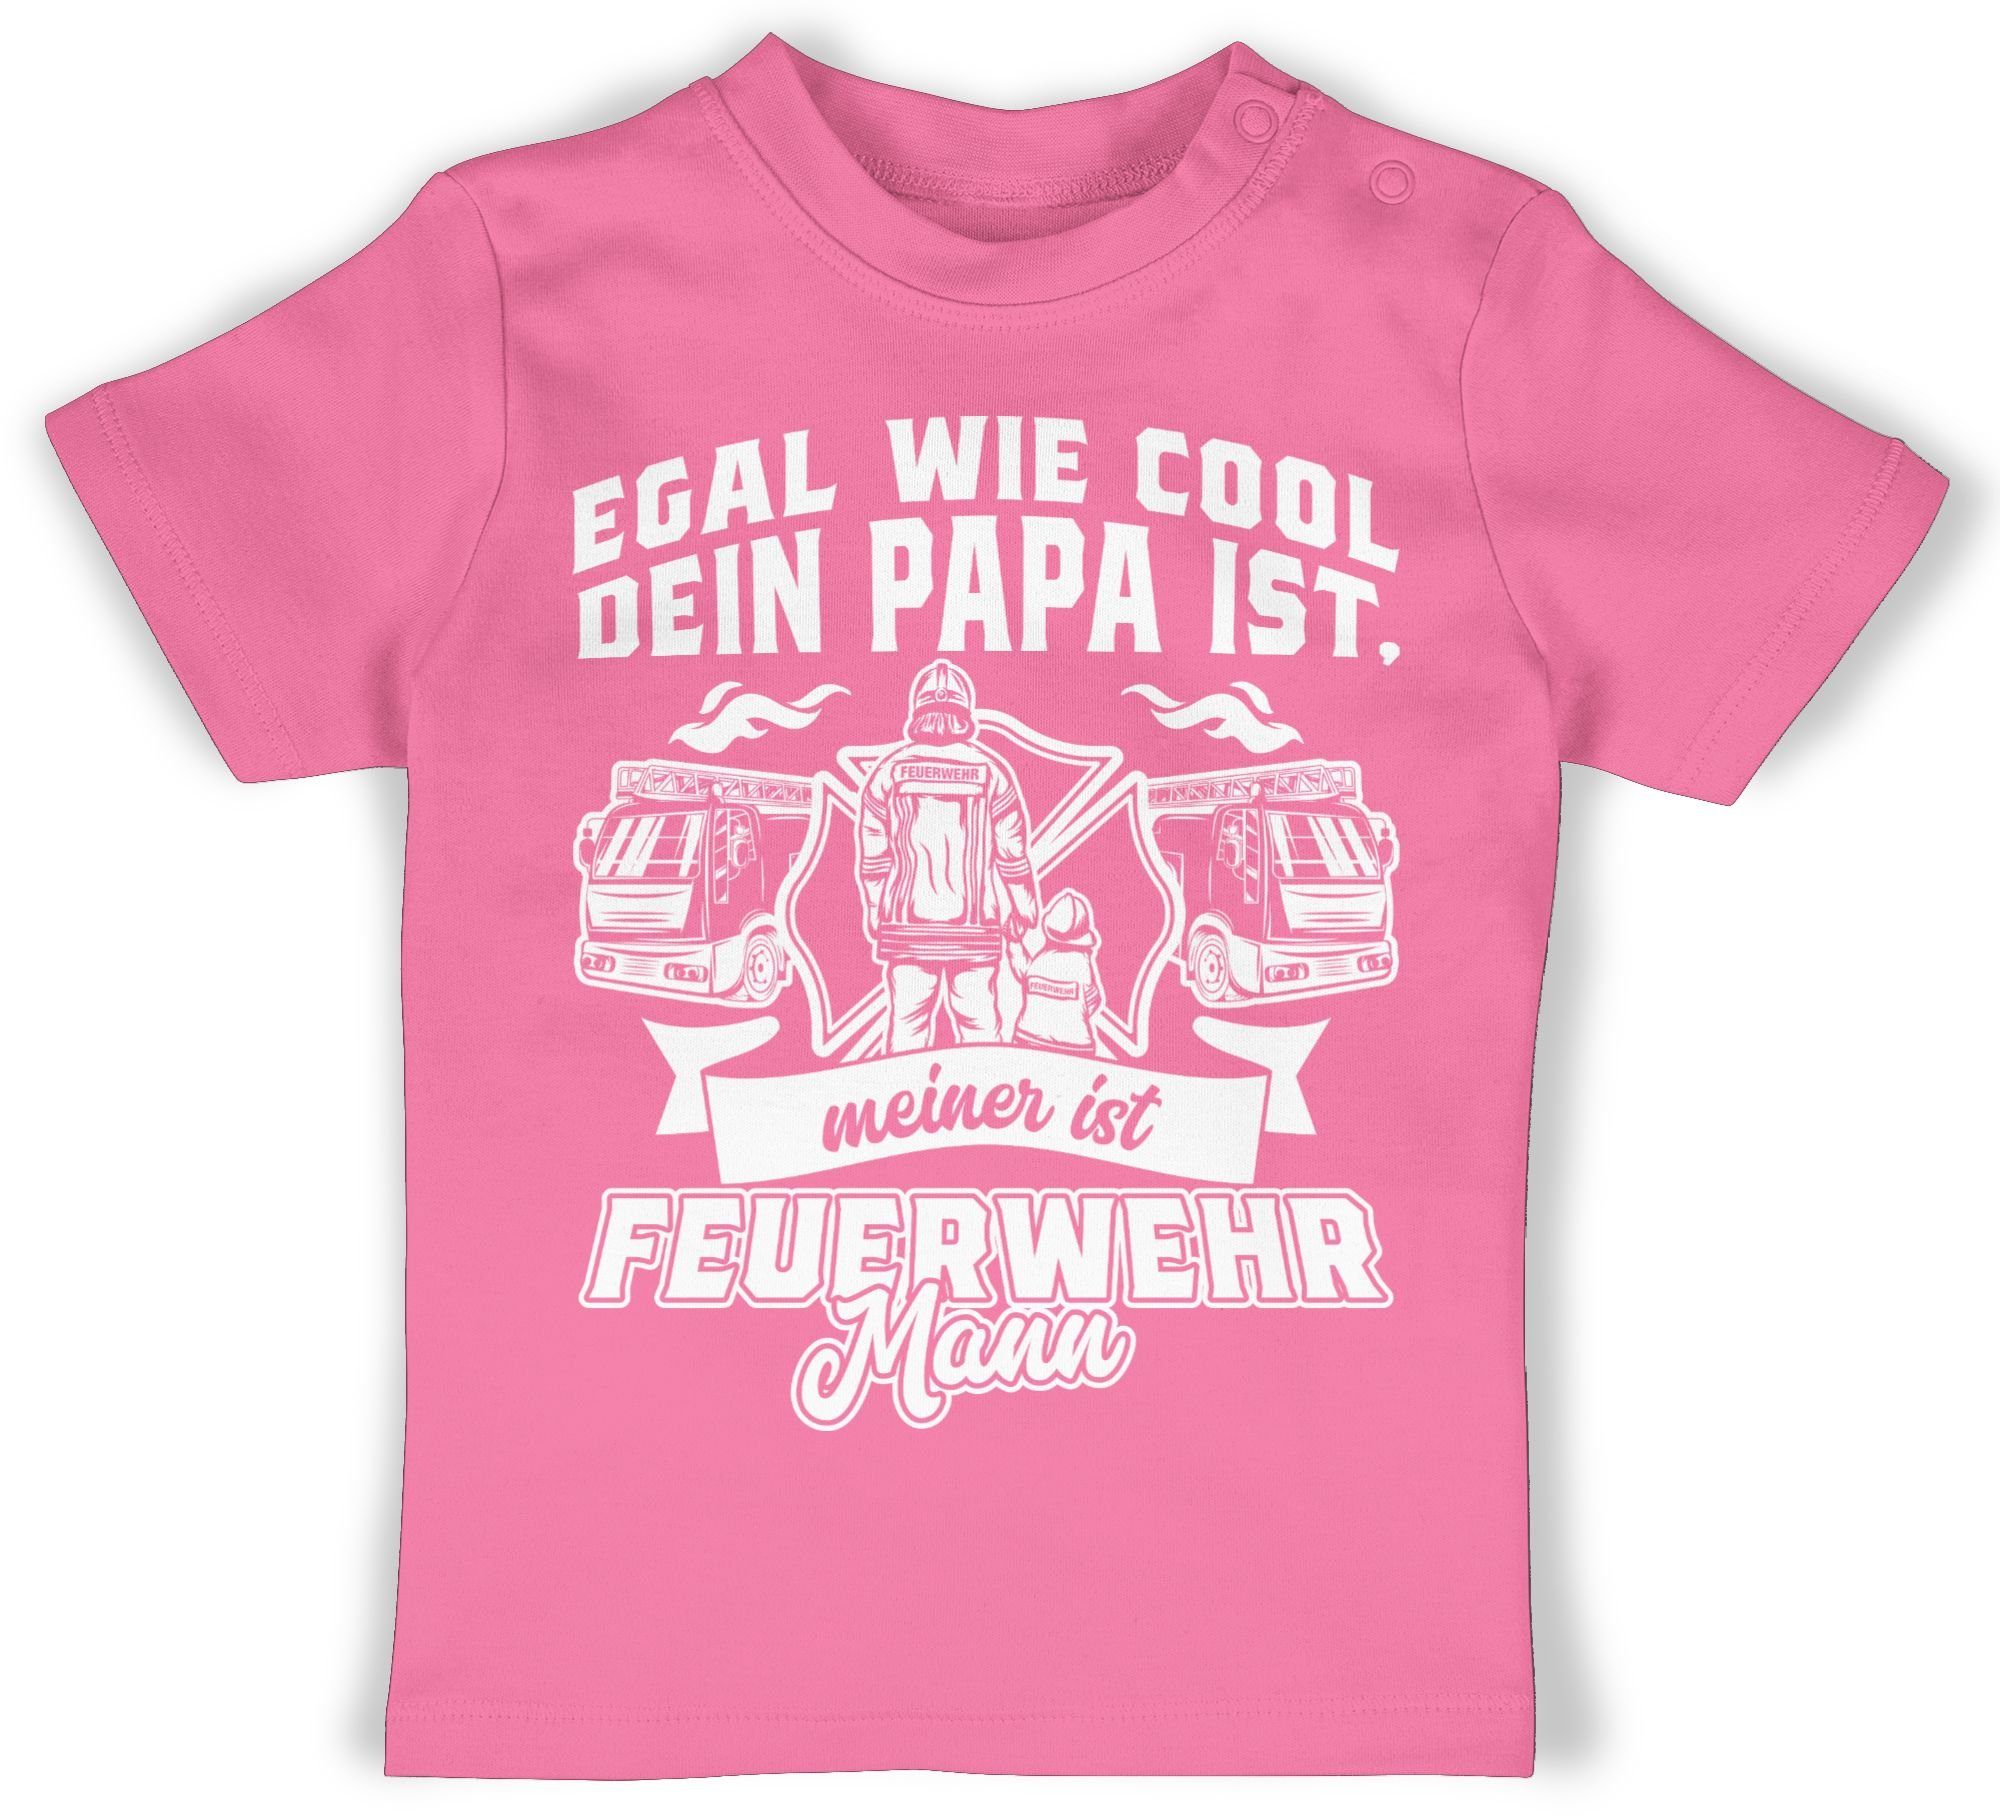 ist Feuerwehr 1 dein Mann Shirtracer meiner wie ist Egal T-Shirt cool Papa Feuerwehr Pink